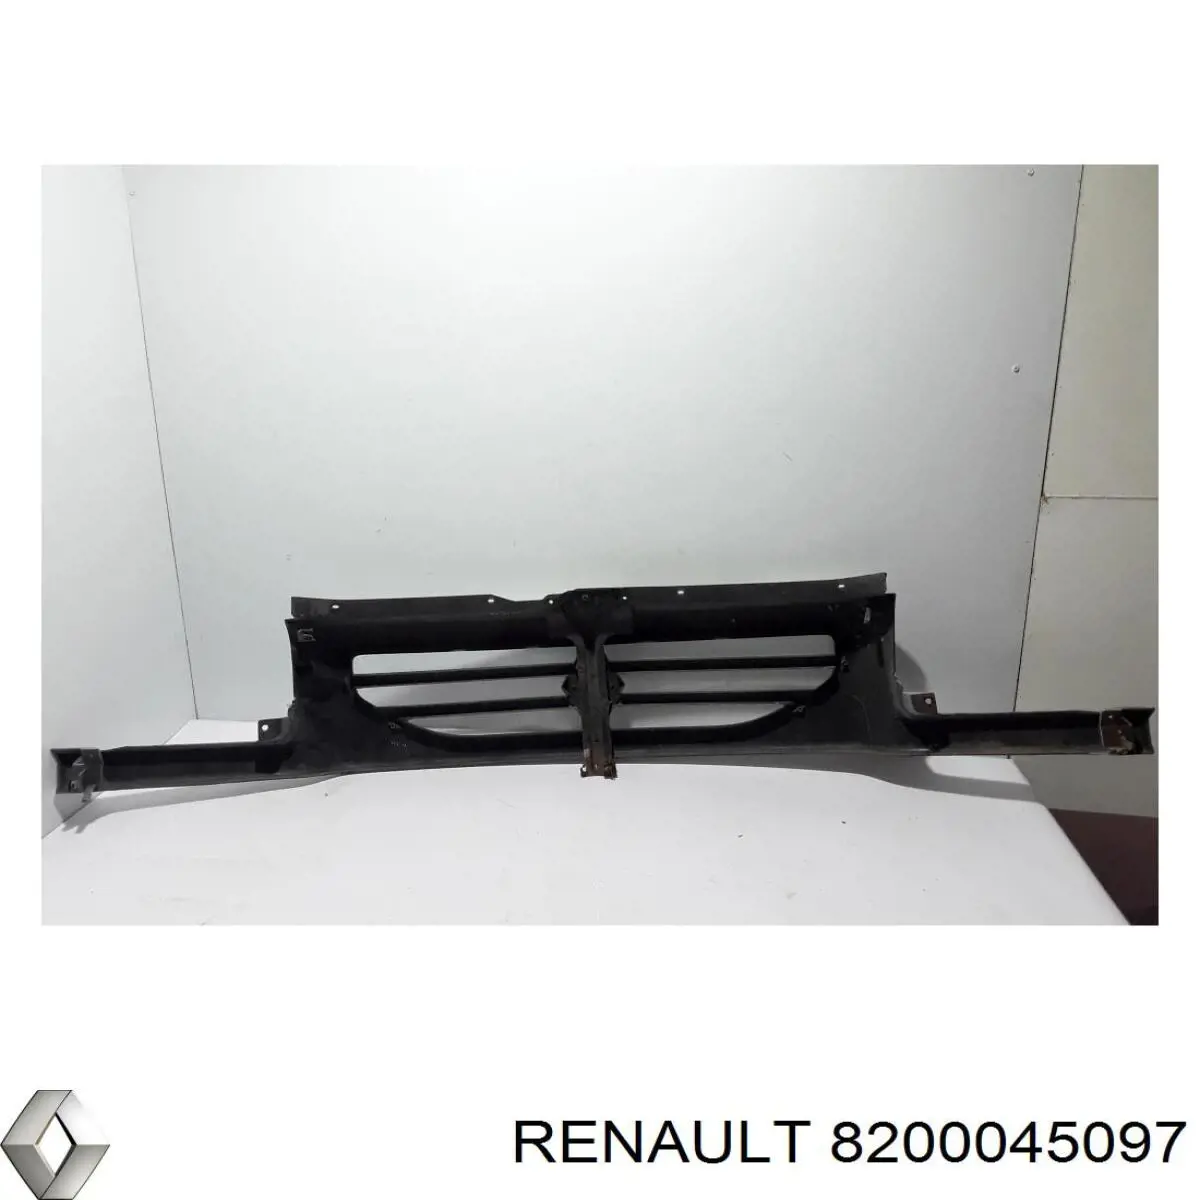 8200045097 Renault (RVI) parrilla